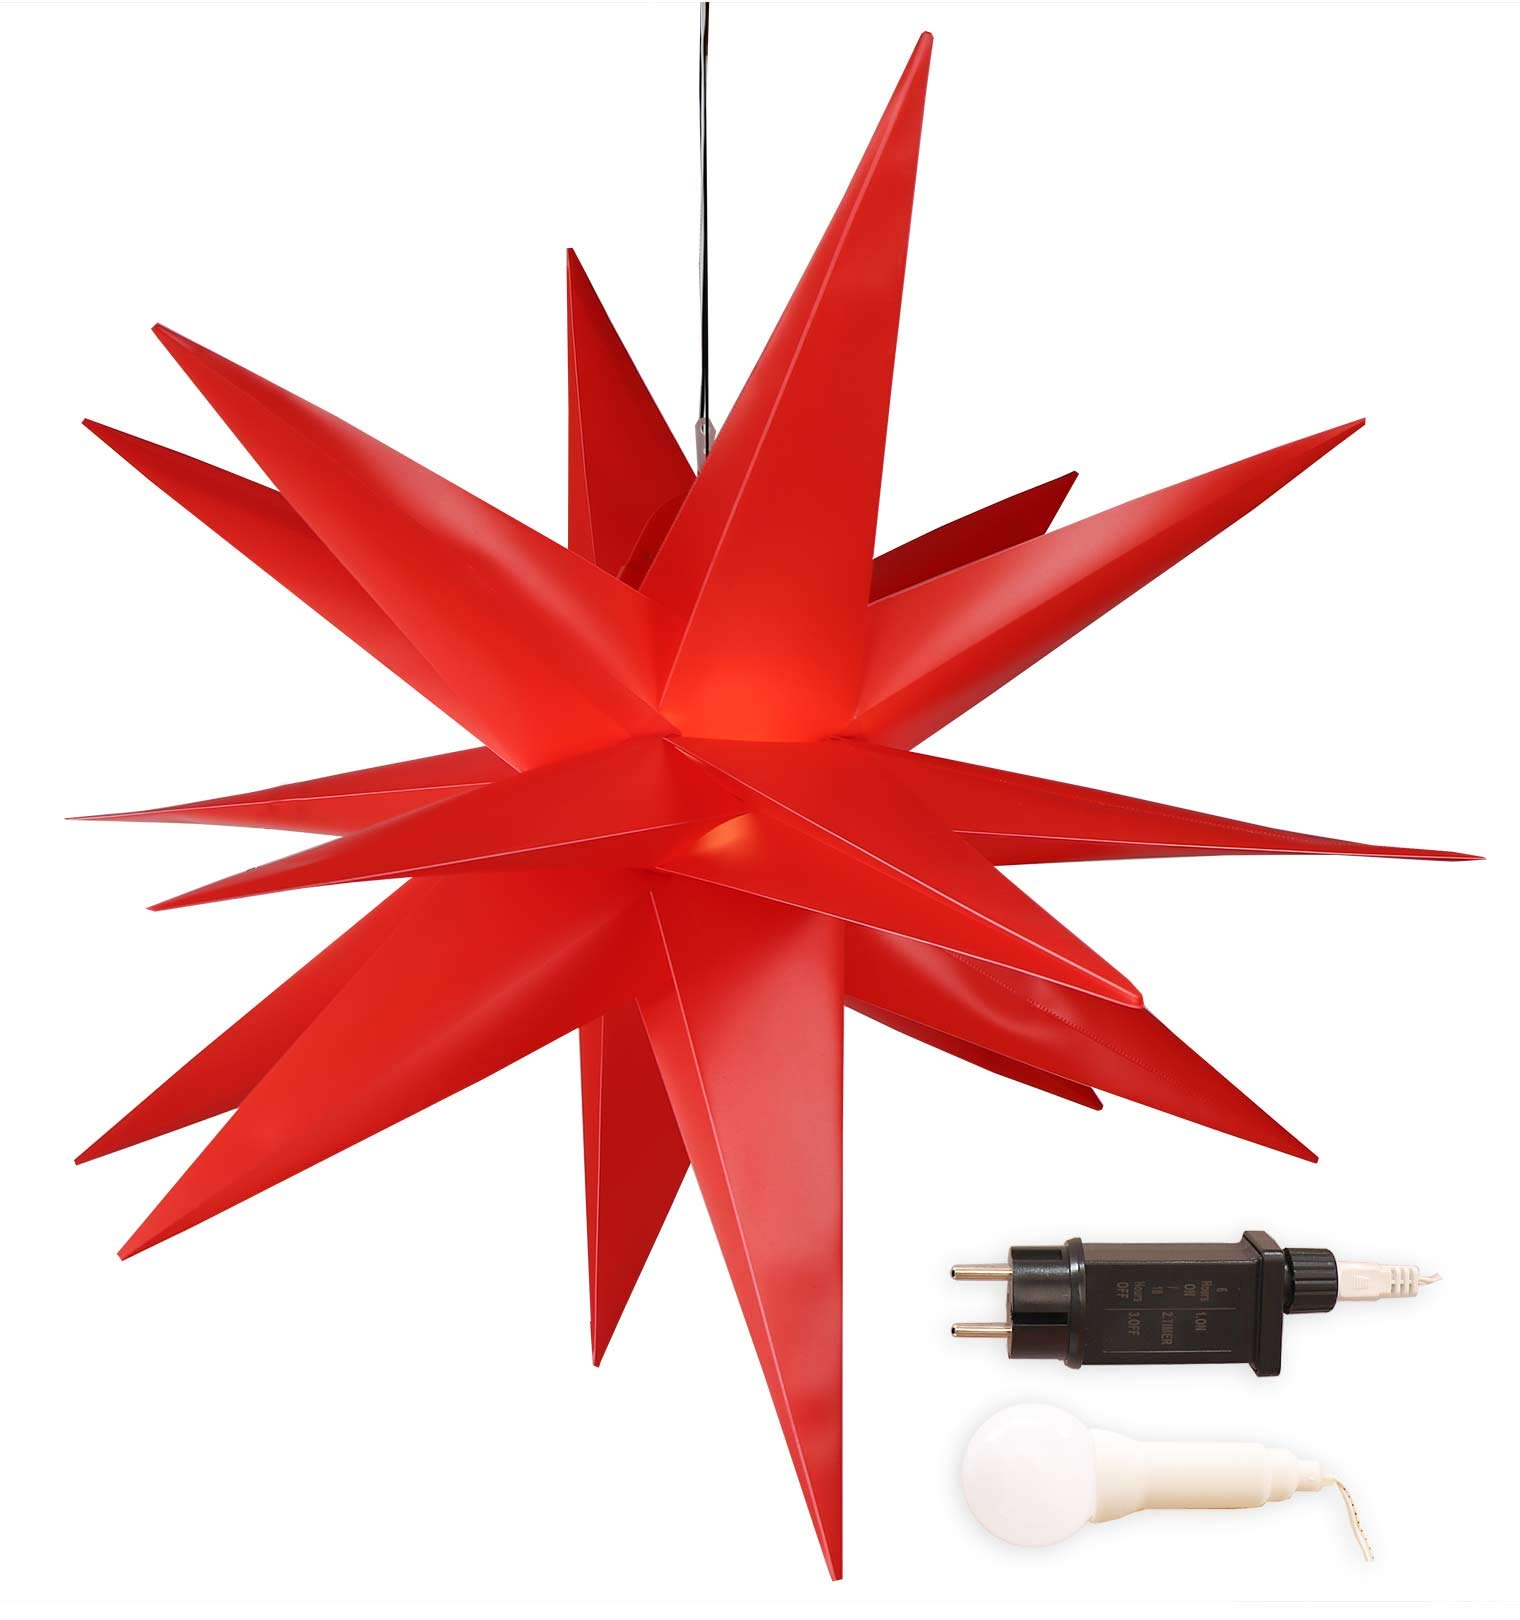 Gartenpirat Weihnachtsbeleuchtung außen/innen – Weihnachtsdeko Beleuchtung – Weihnachtsstern aus Folie mit LED-Birne & Timer – Ø 100 cm – Rot – Zauberhafter Hingucker